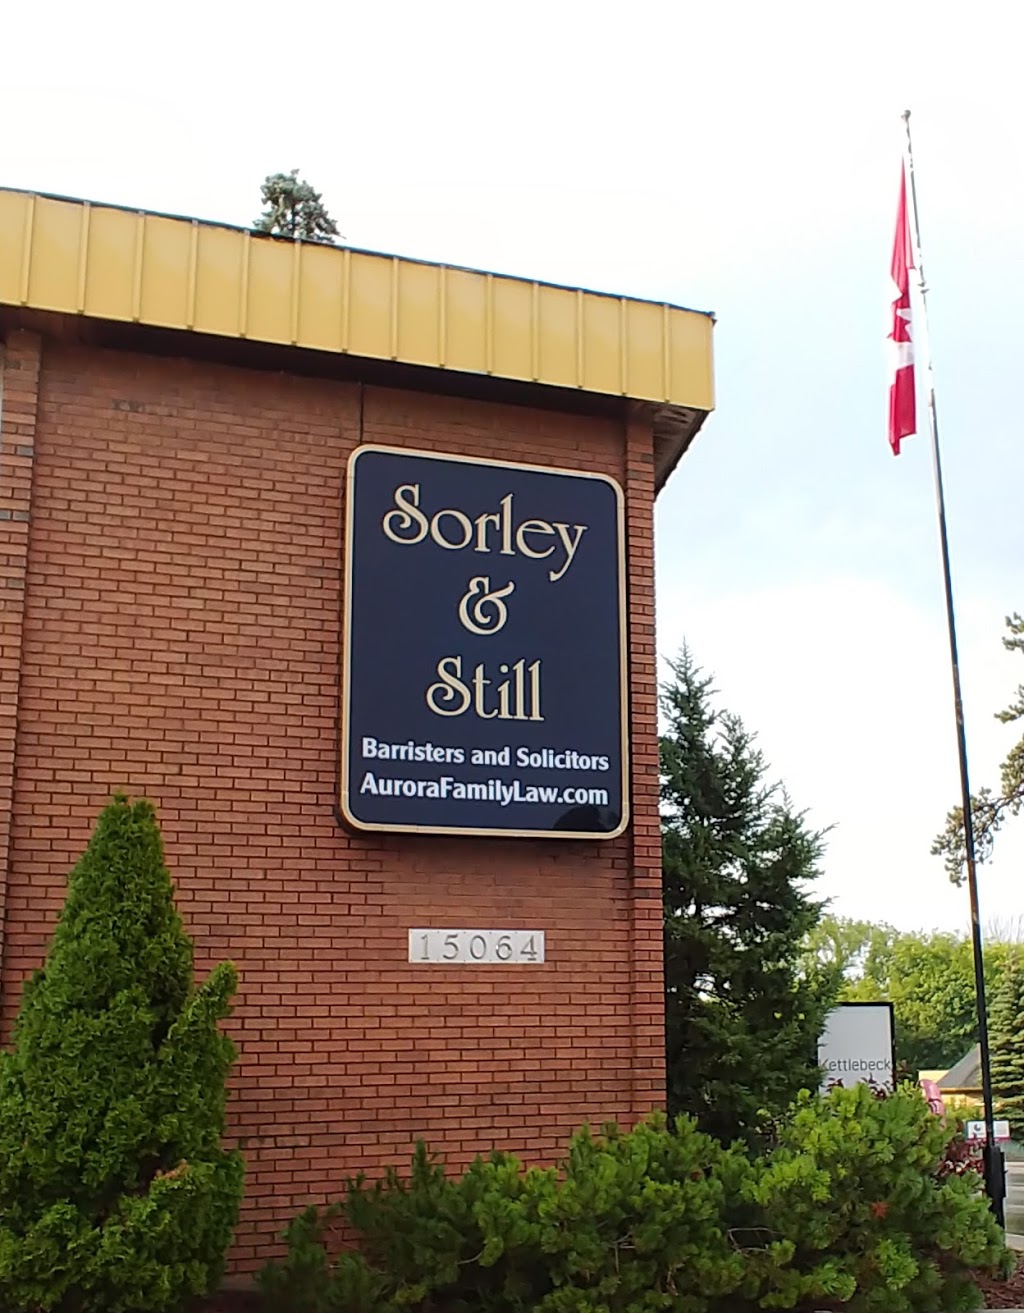 Sorley & Still | 15064 Yonge St, Aurora, ON L4G 1M2, Canada | Phone: (905) 726-9956